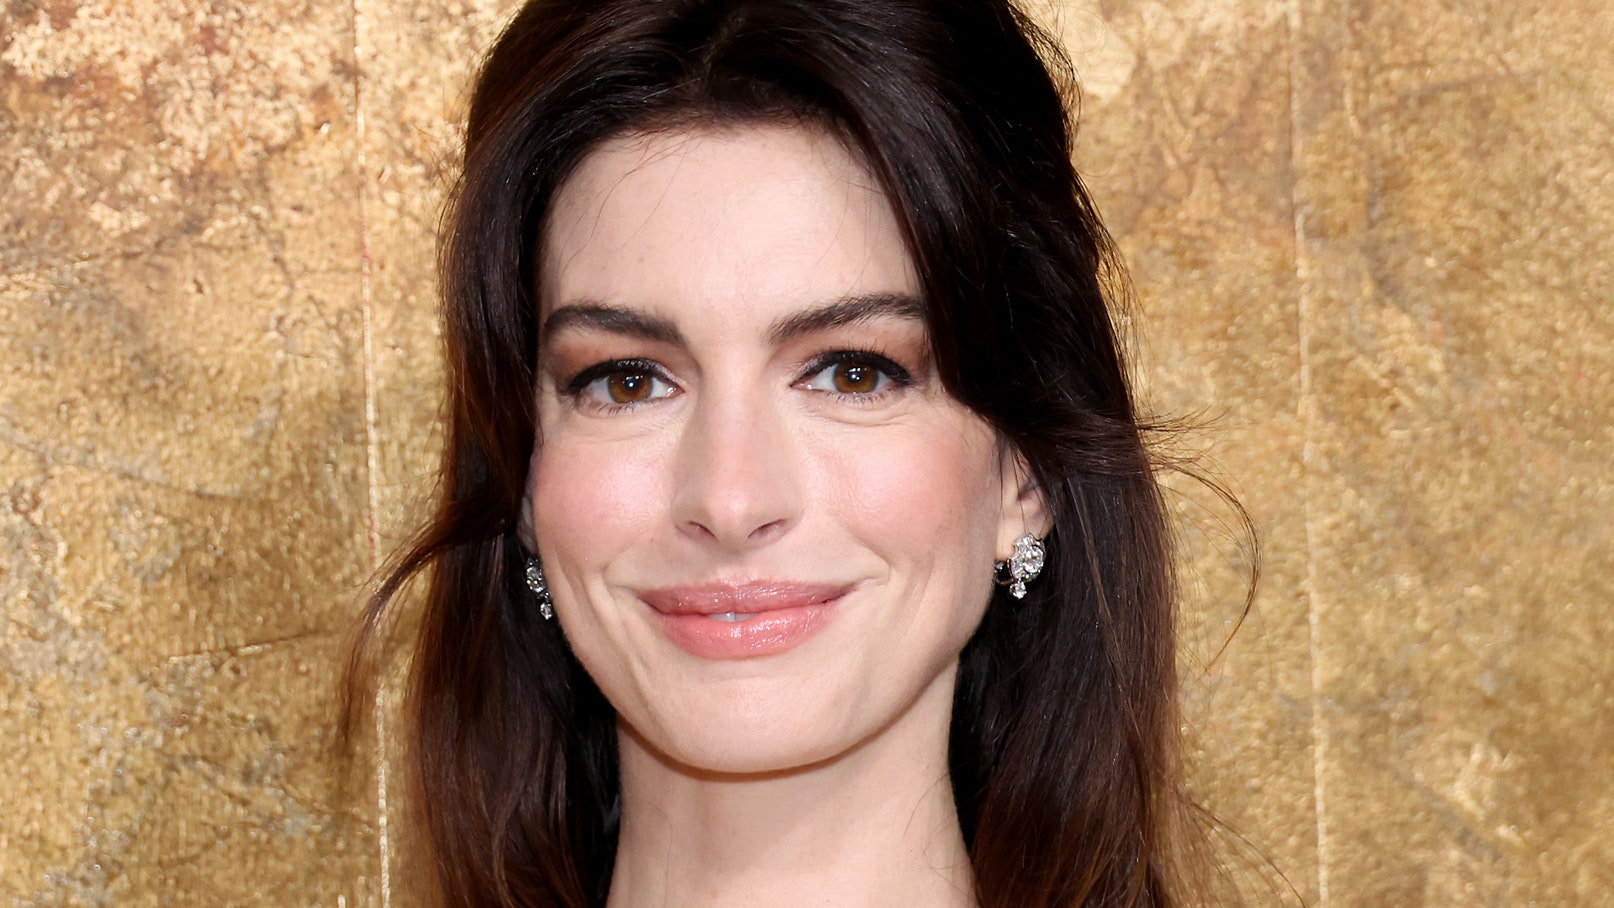 El pelo ondulado de Anne Hathaway grita "Ni siquiera tengo que intentarlo para estar así de guapa"